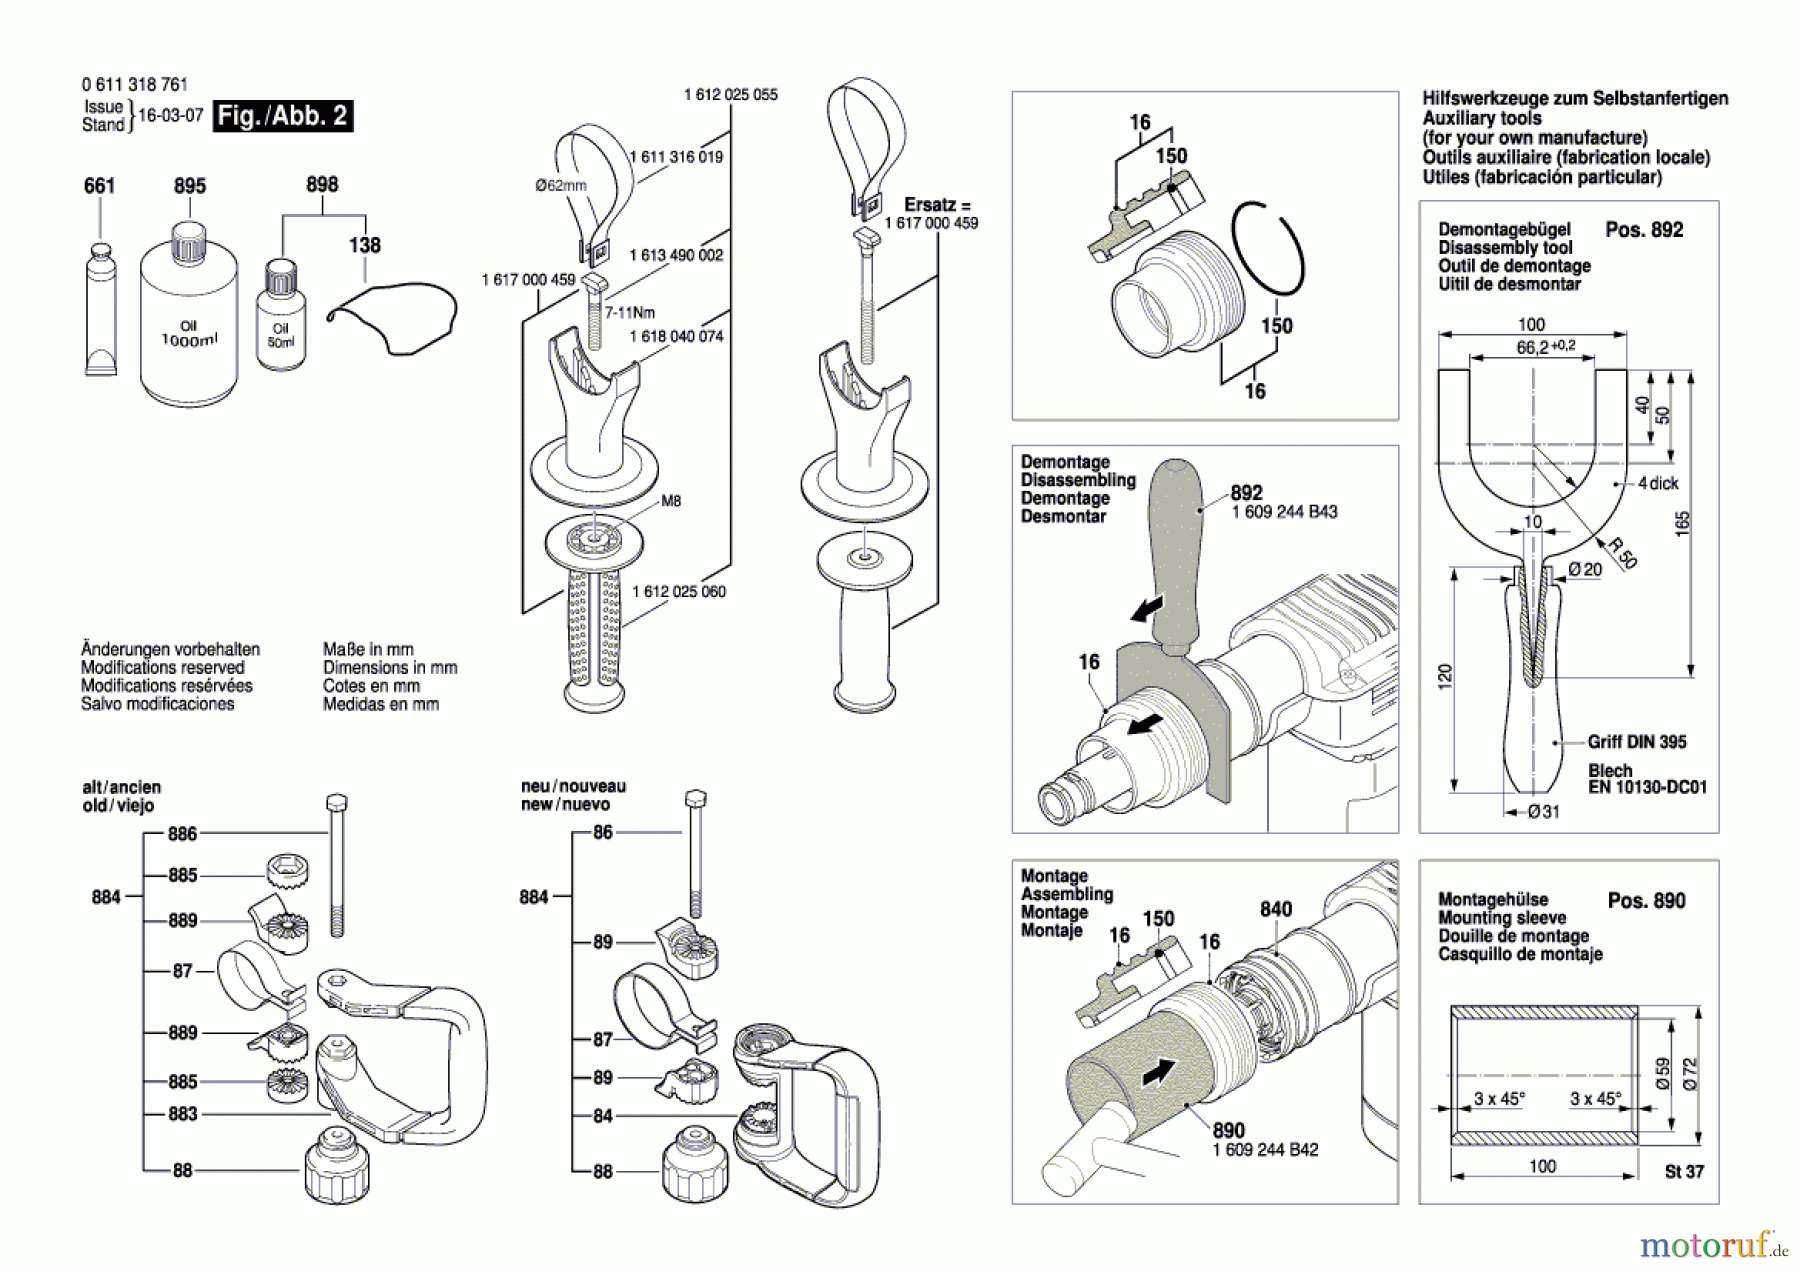  Bosch Werkzeug Schlaghammer BCDH-5 Seite 2